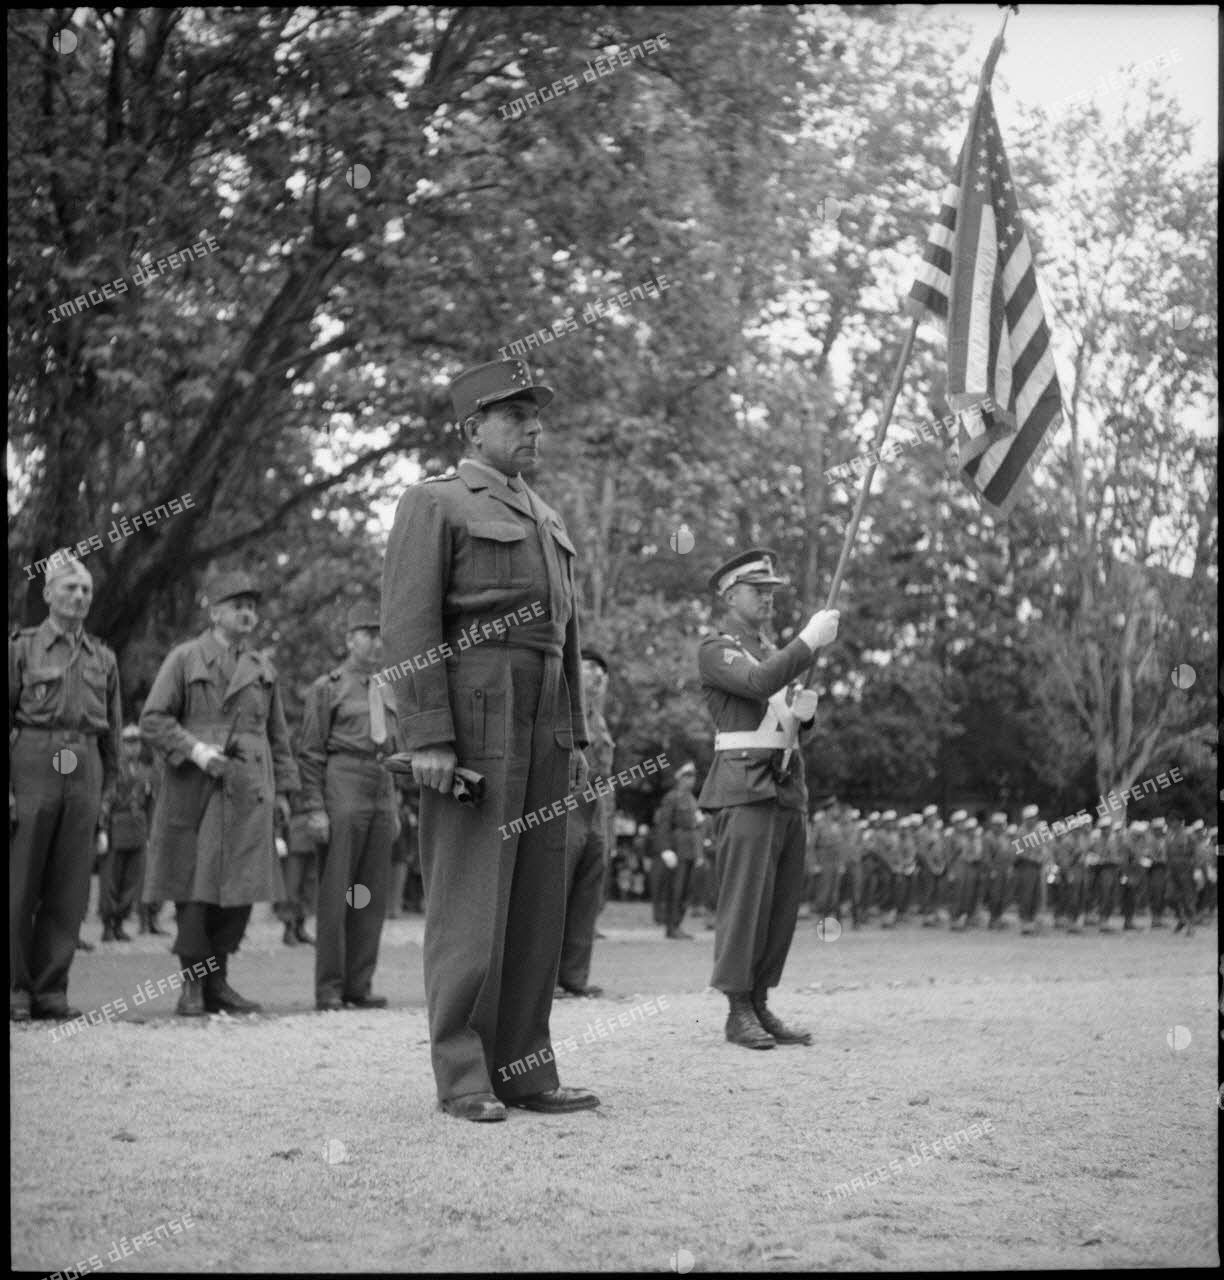 Le général de Lattre de Tassigny s'apprêtant à recevoir l'insigne de commandeur de la Legion of merit et écoutant la citation qui précède.